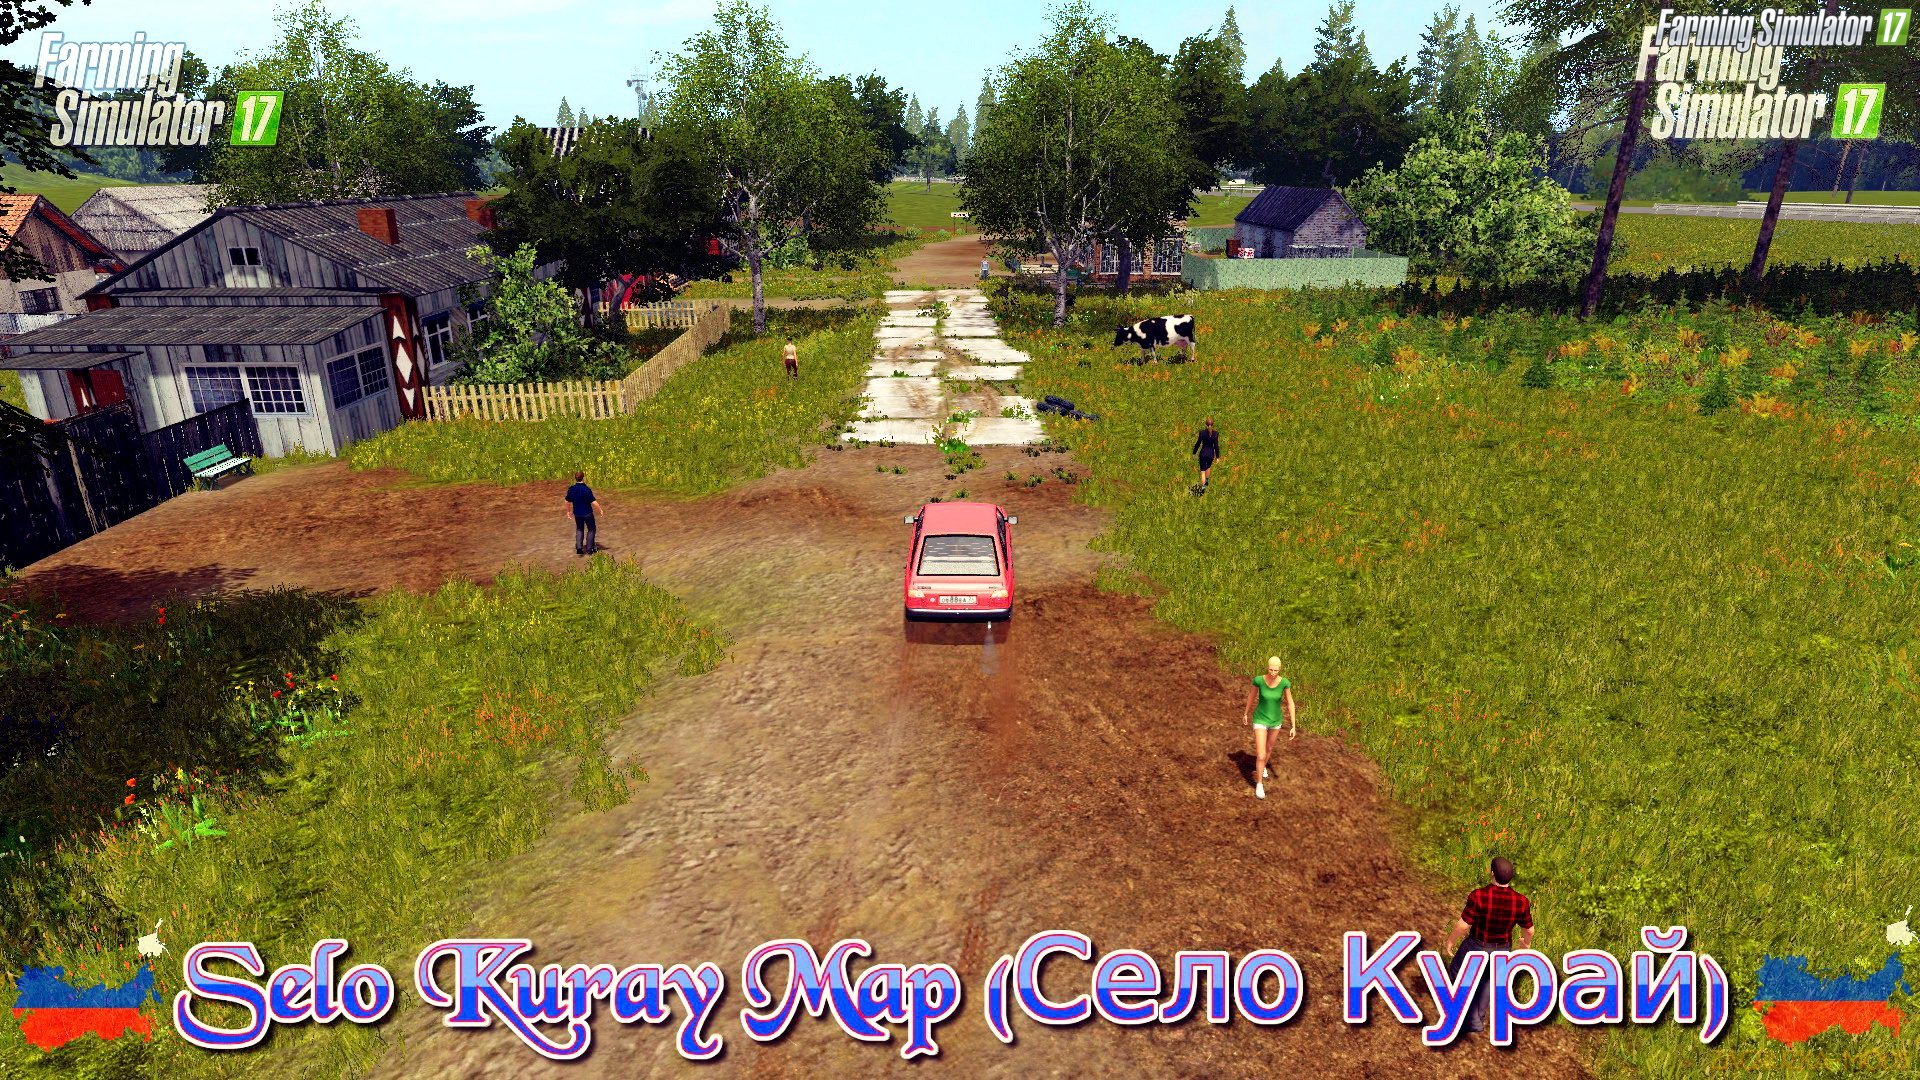 Selo Kuray Map (Село Курай) v1.5 for FS 17